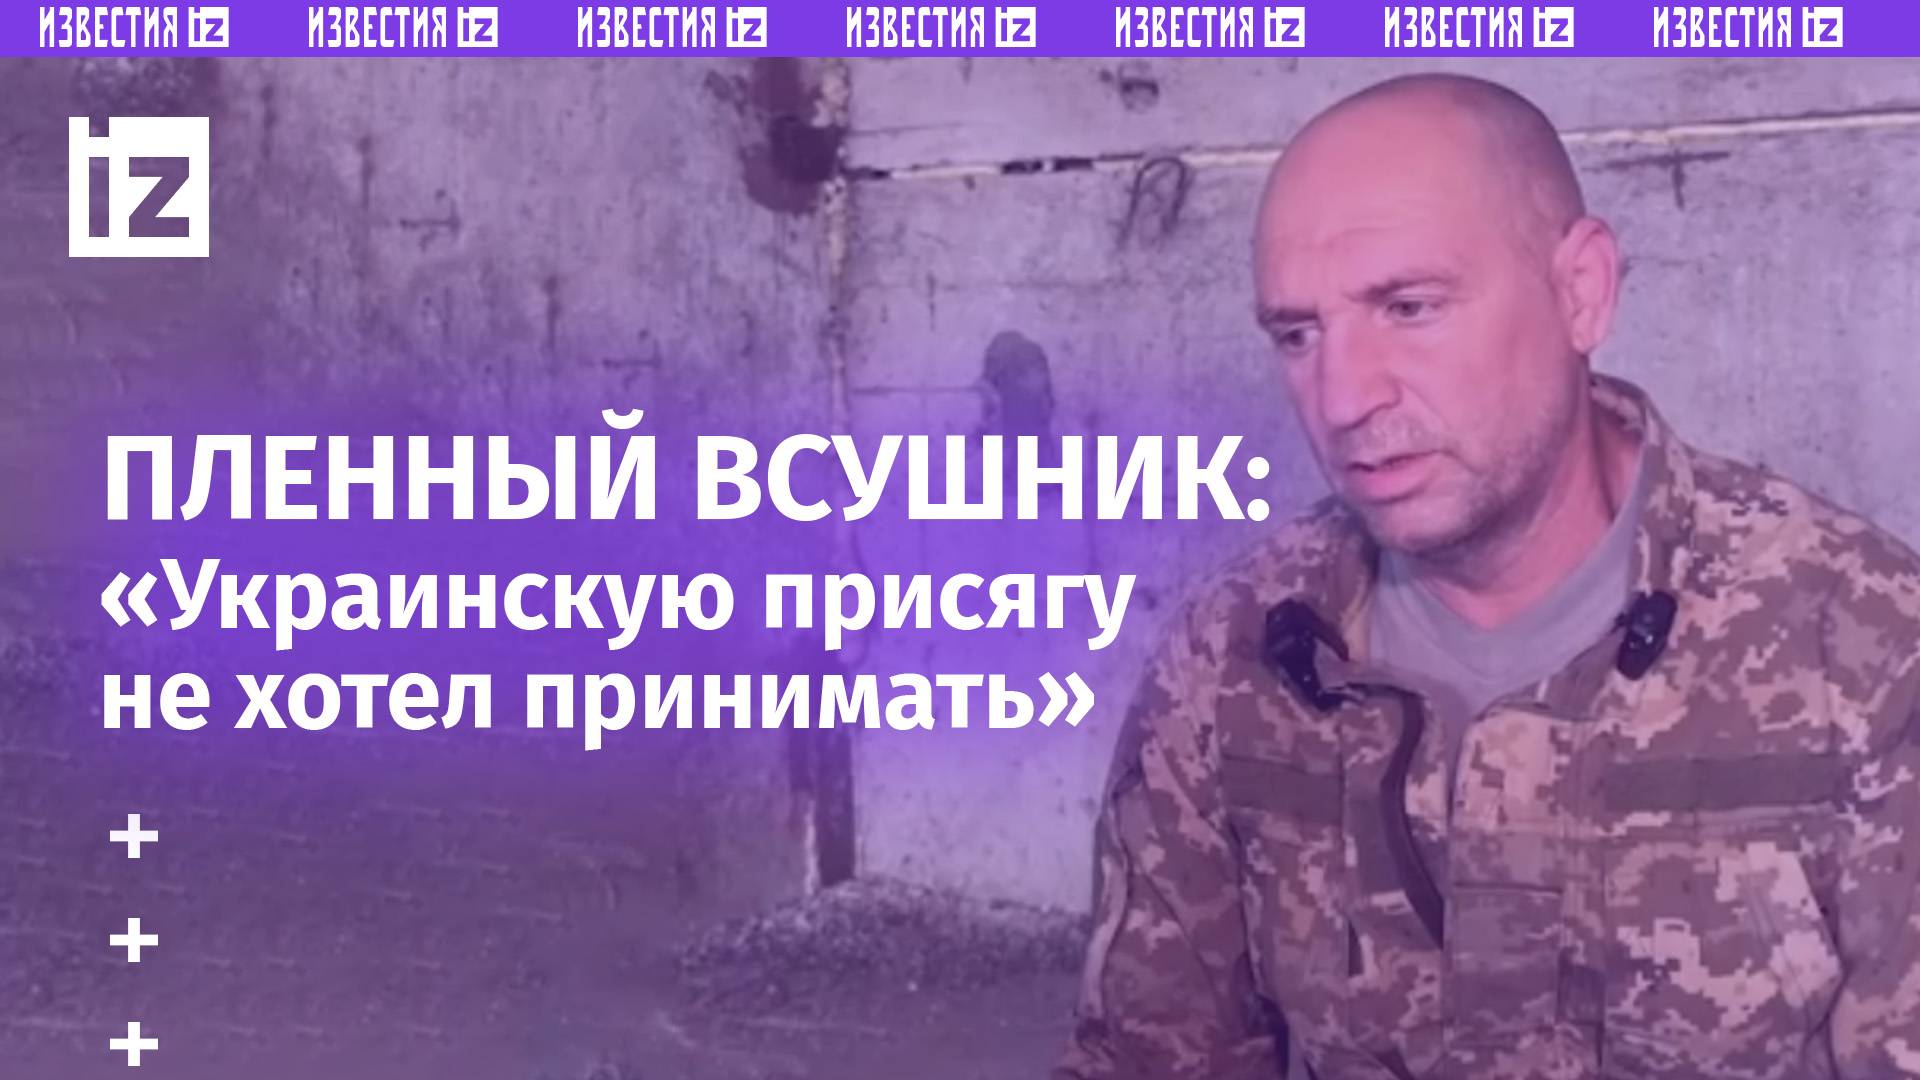 «Украинскую присягу не хотел принимать»: пожилой пленный ВСУшник - о поголовной мобилизации в ВСУ